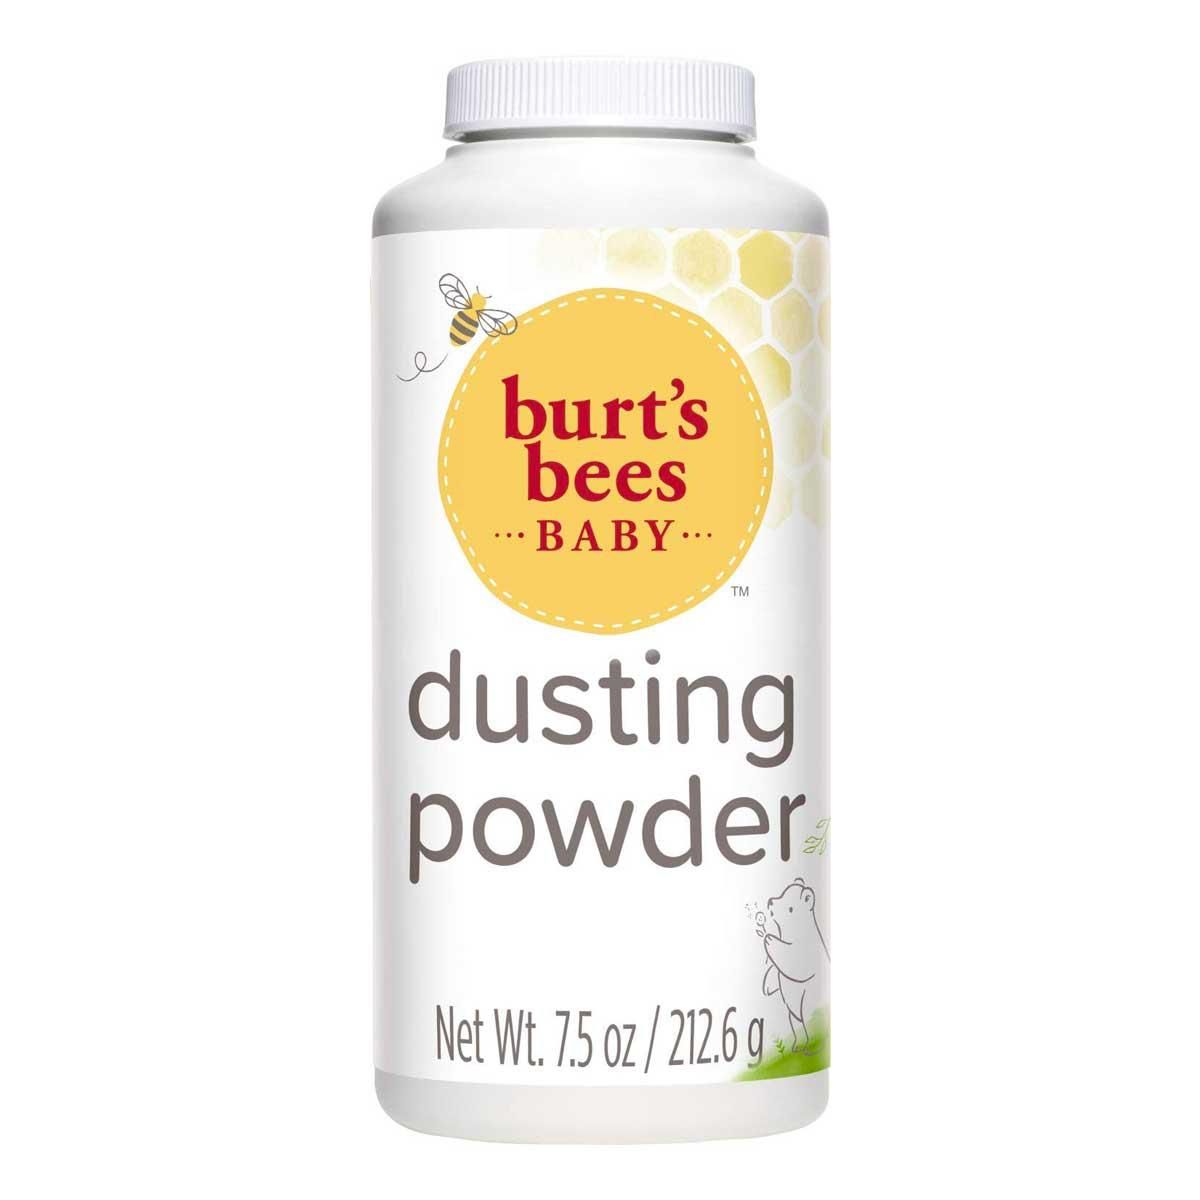 burts bees baby 100 percent natural dusting powder